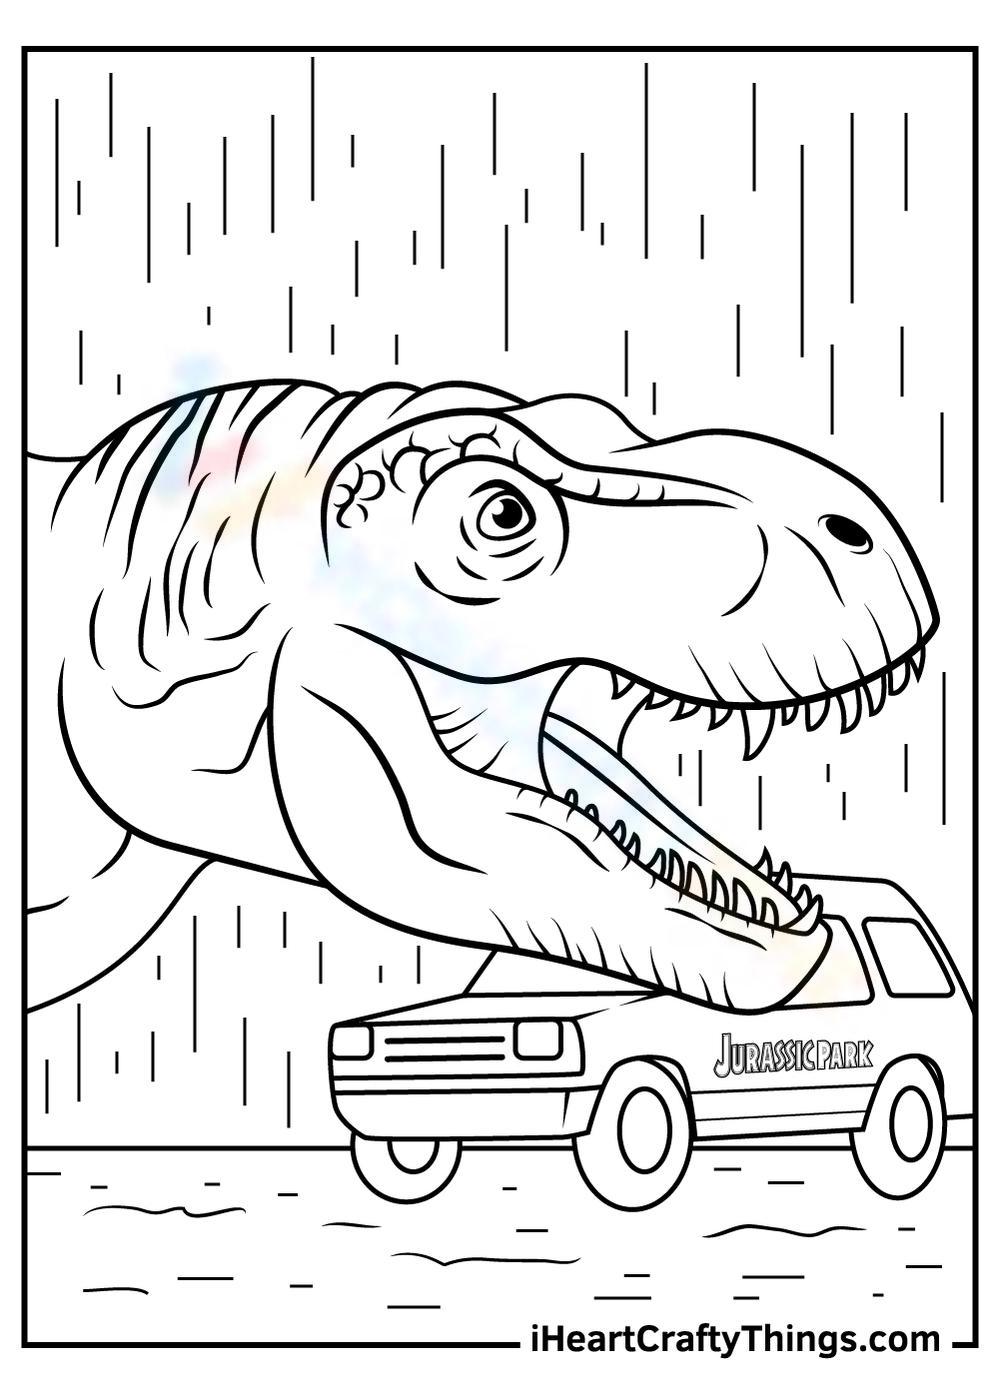 Jurassic Park Car Worksheet